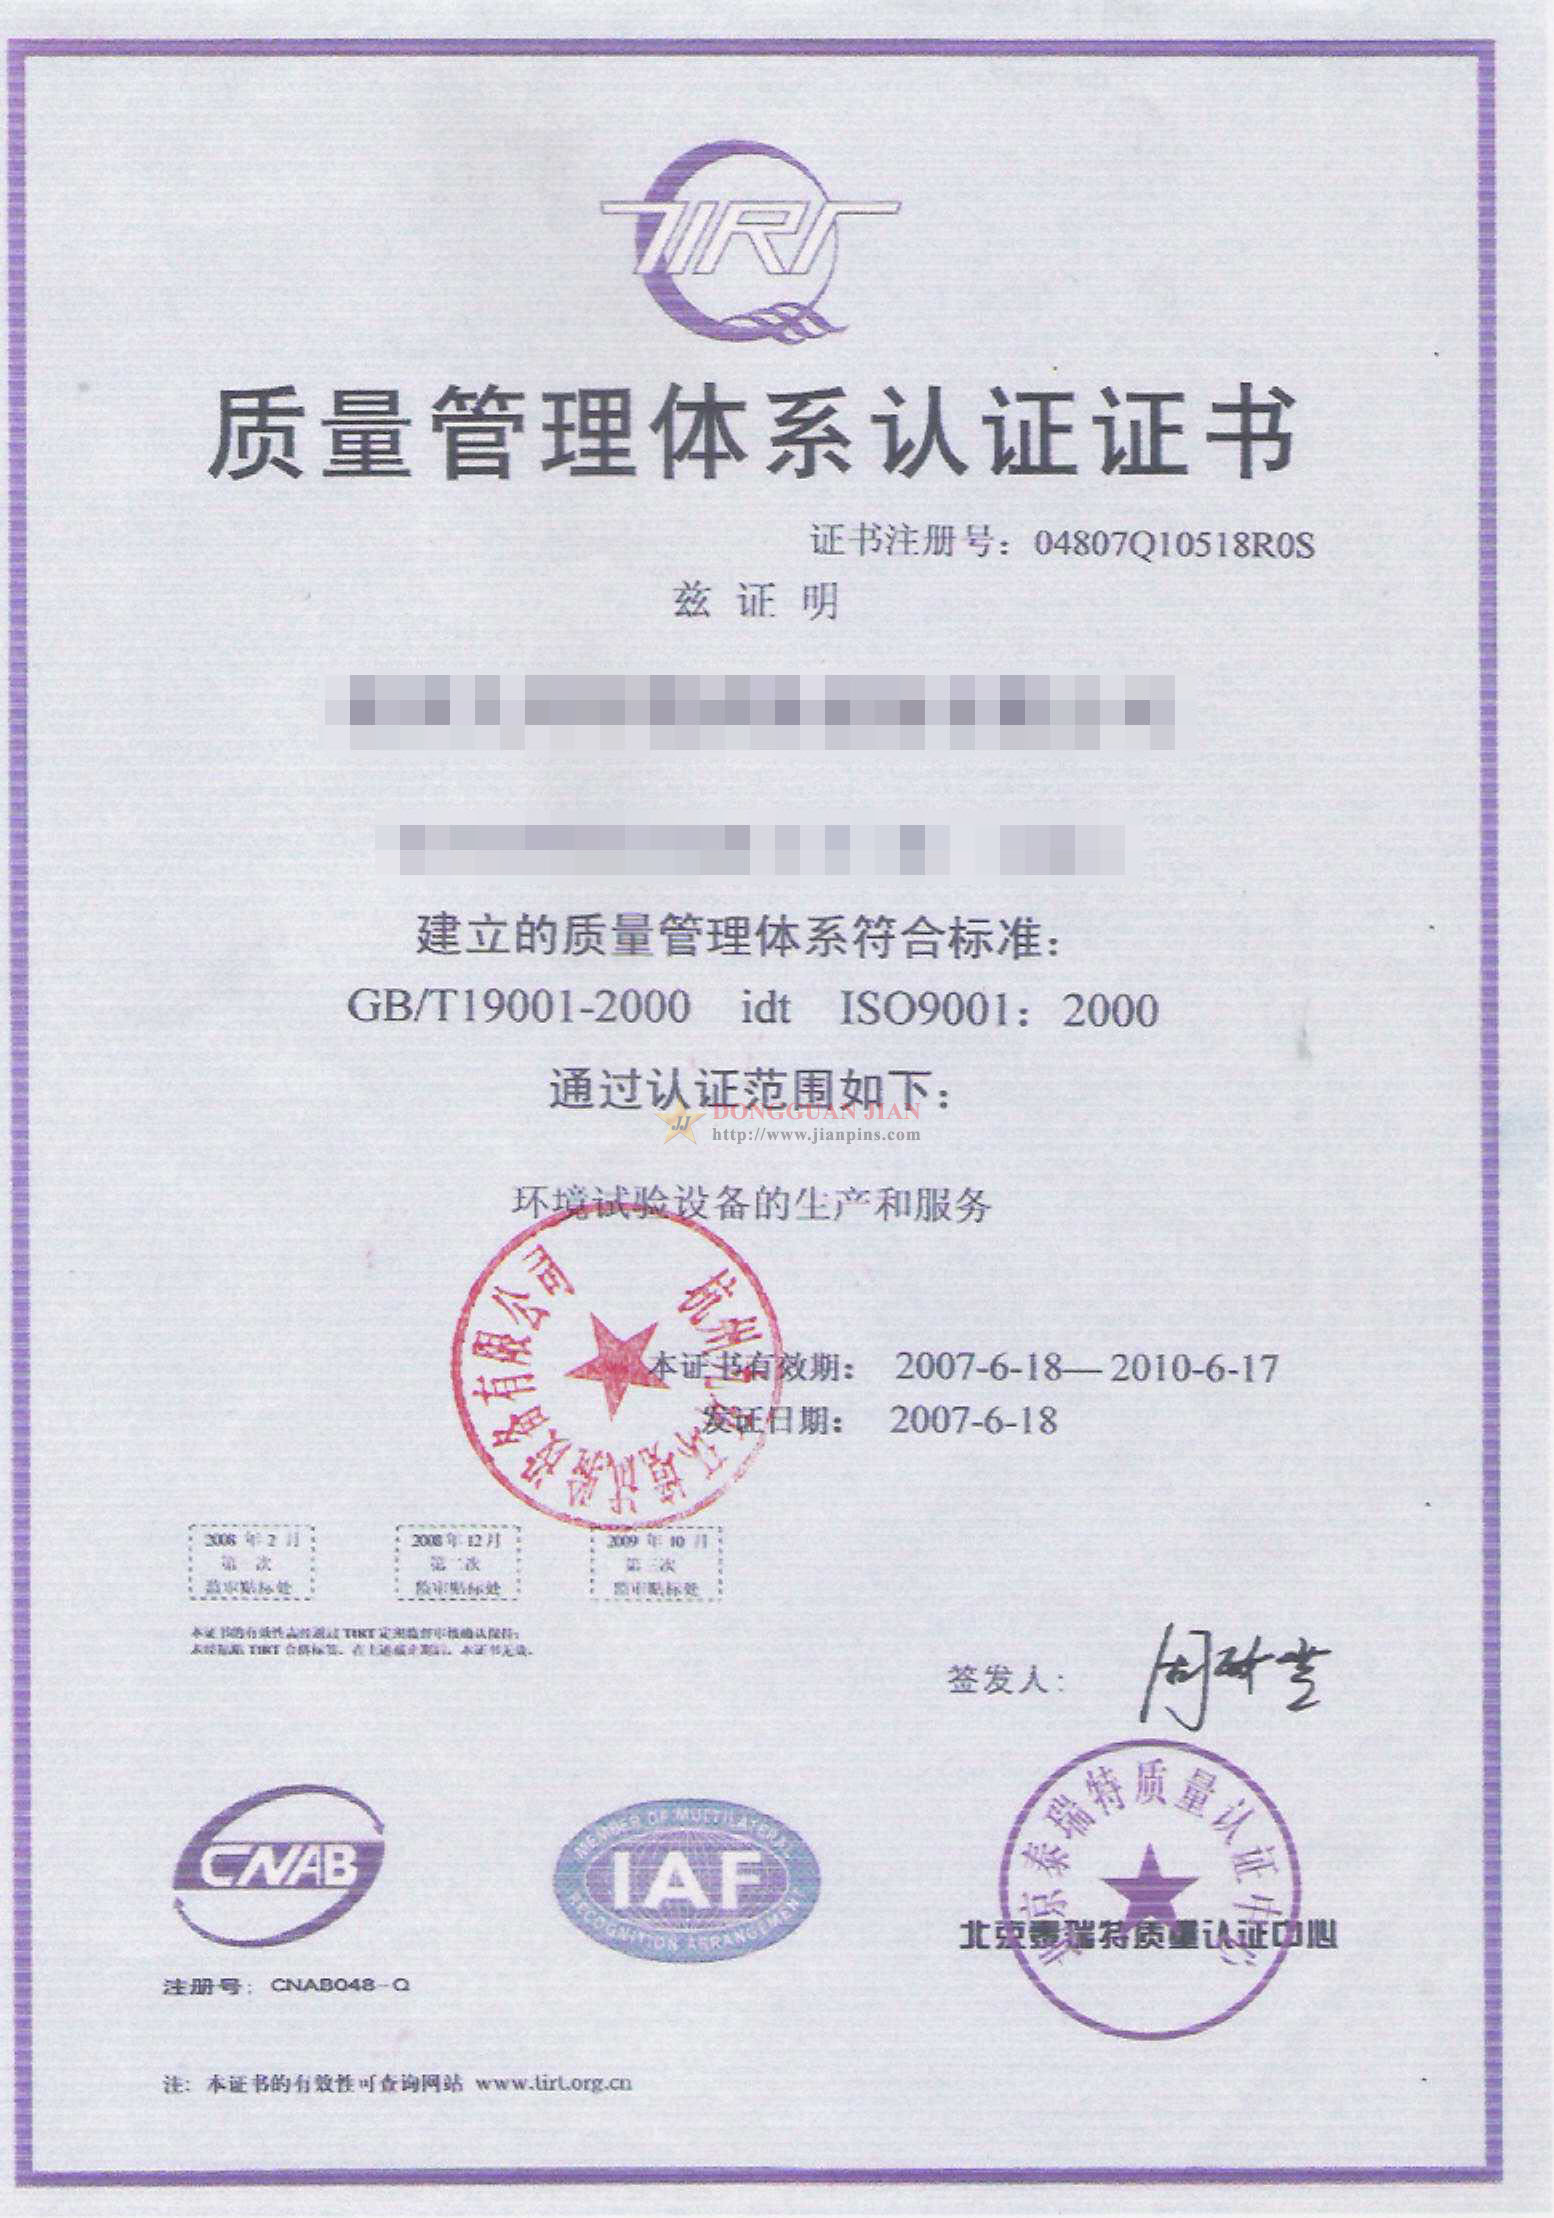 Certificaten1